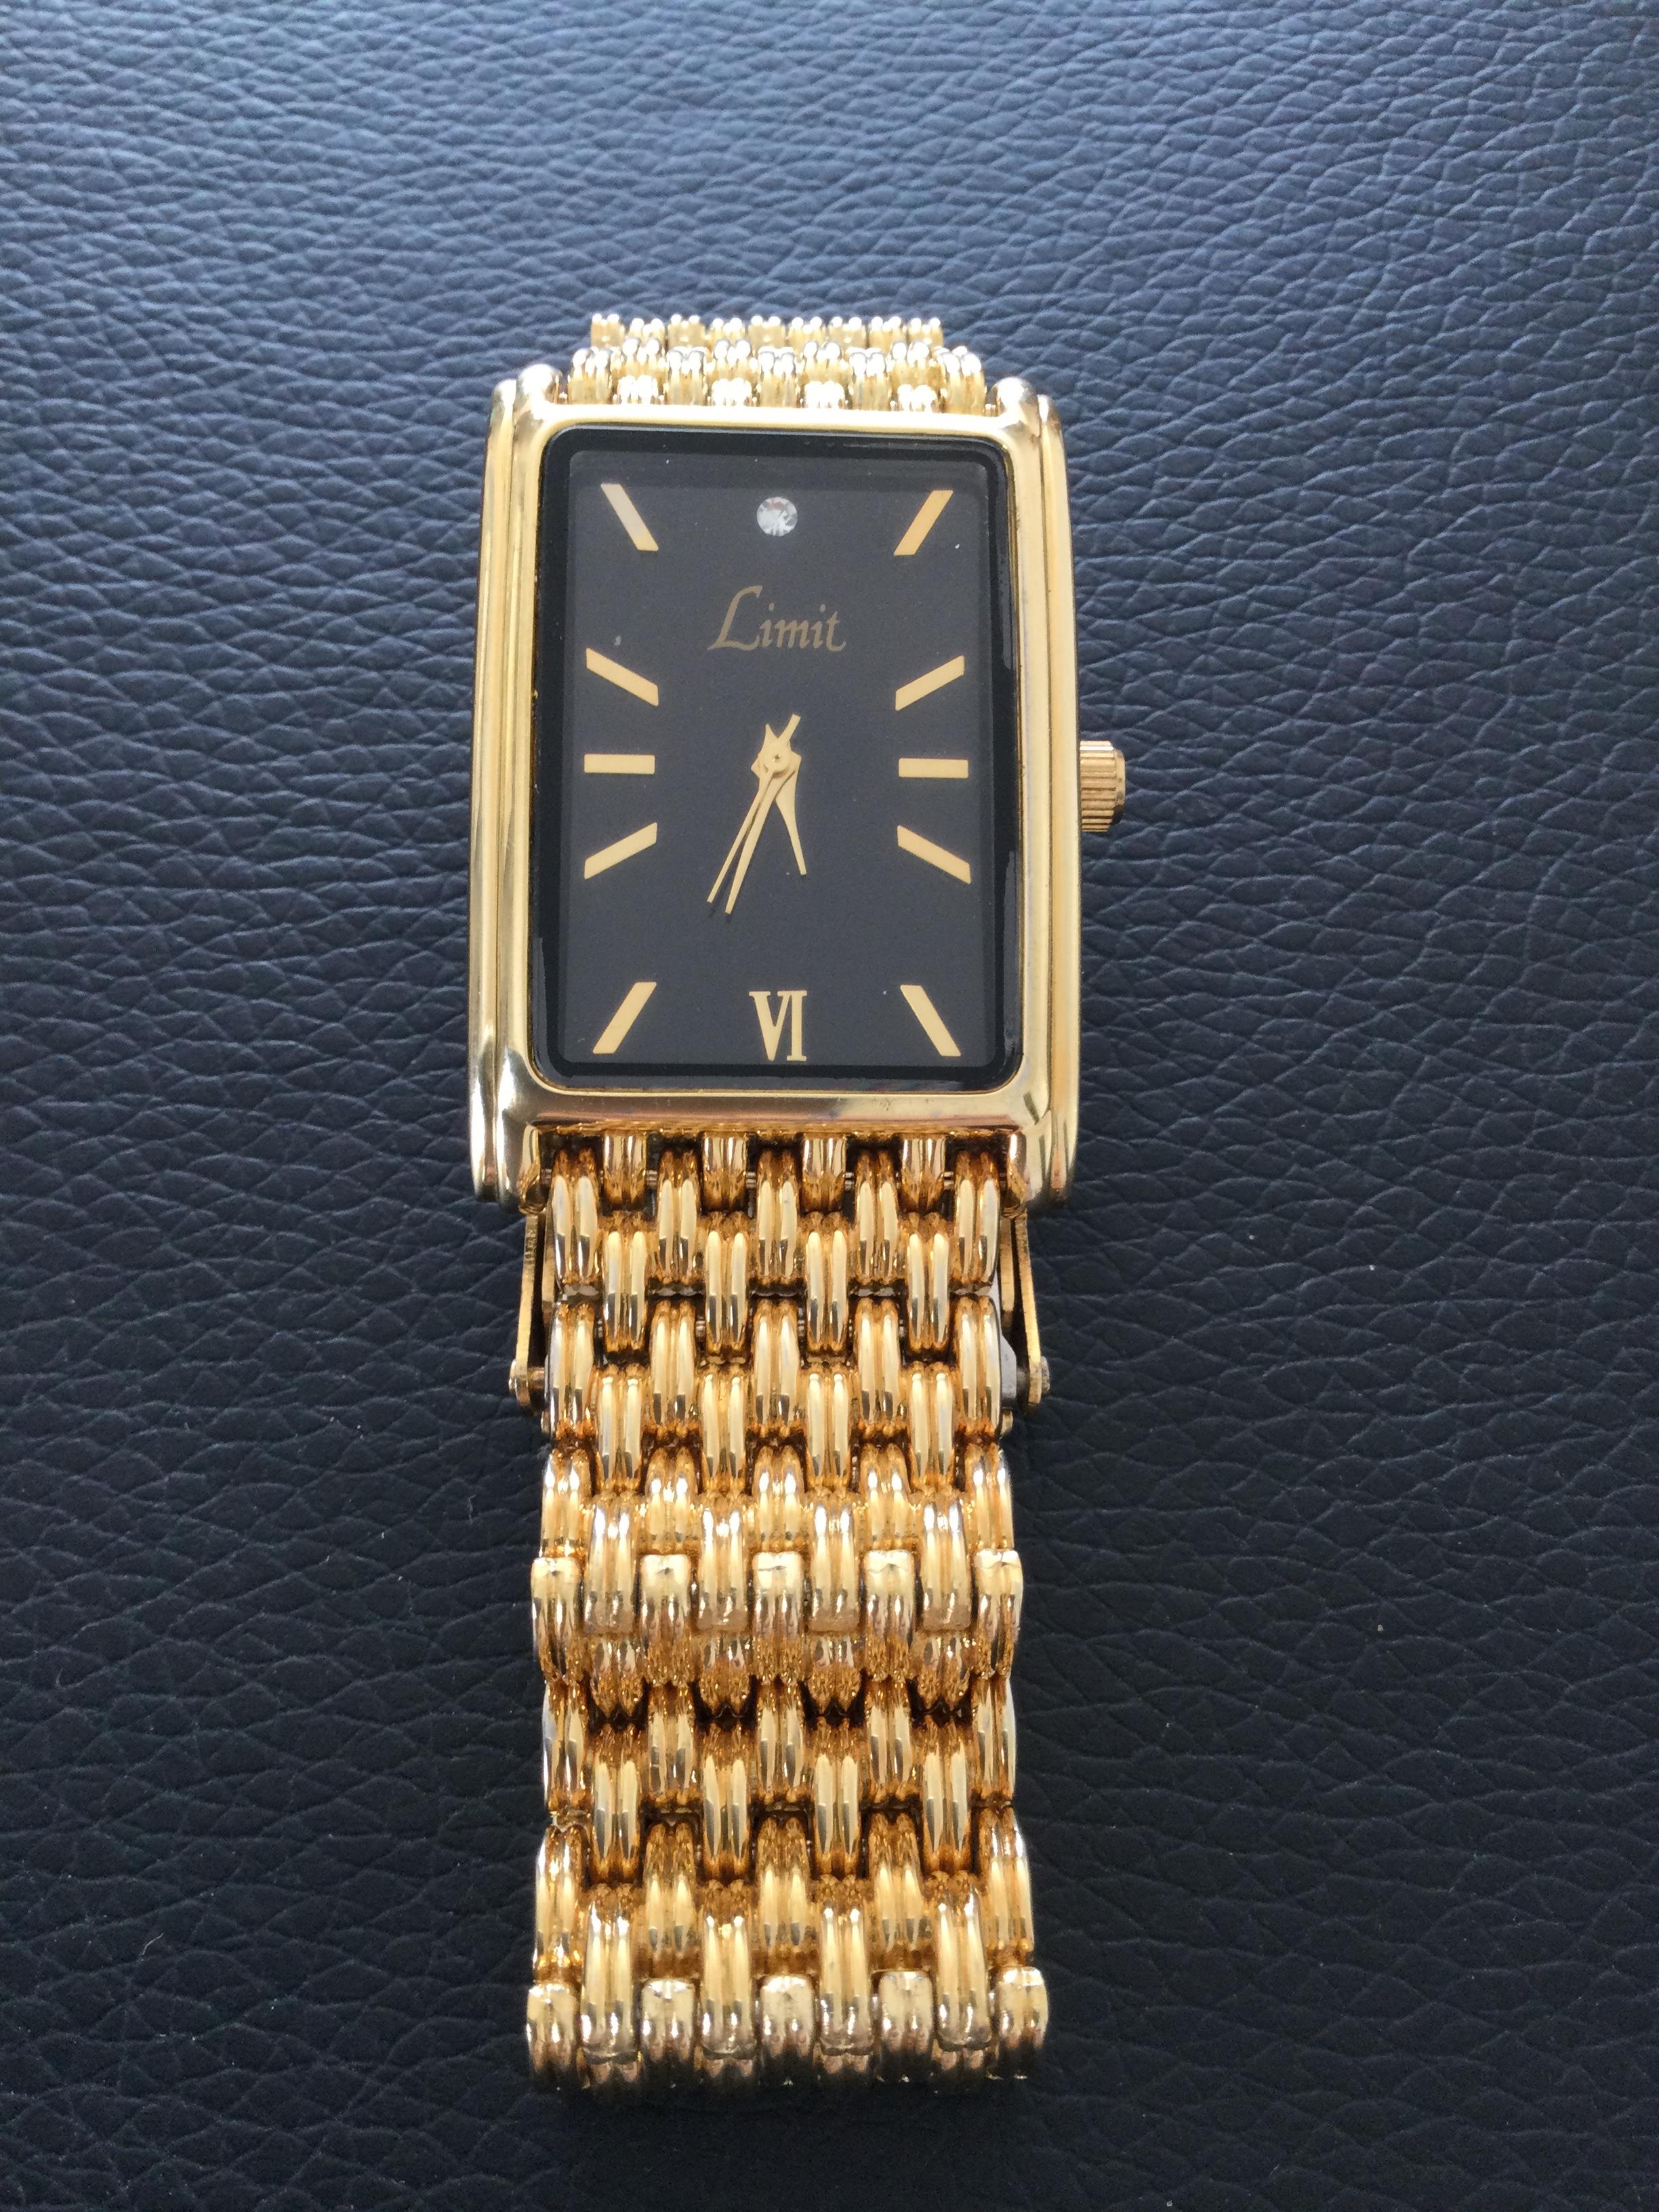 Limit Unisex Quartz Gold Plated Wristwatch (Gs58) - Image 8 of 10